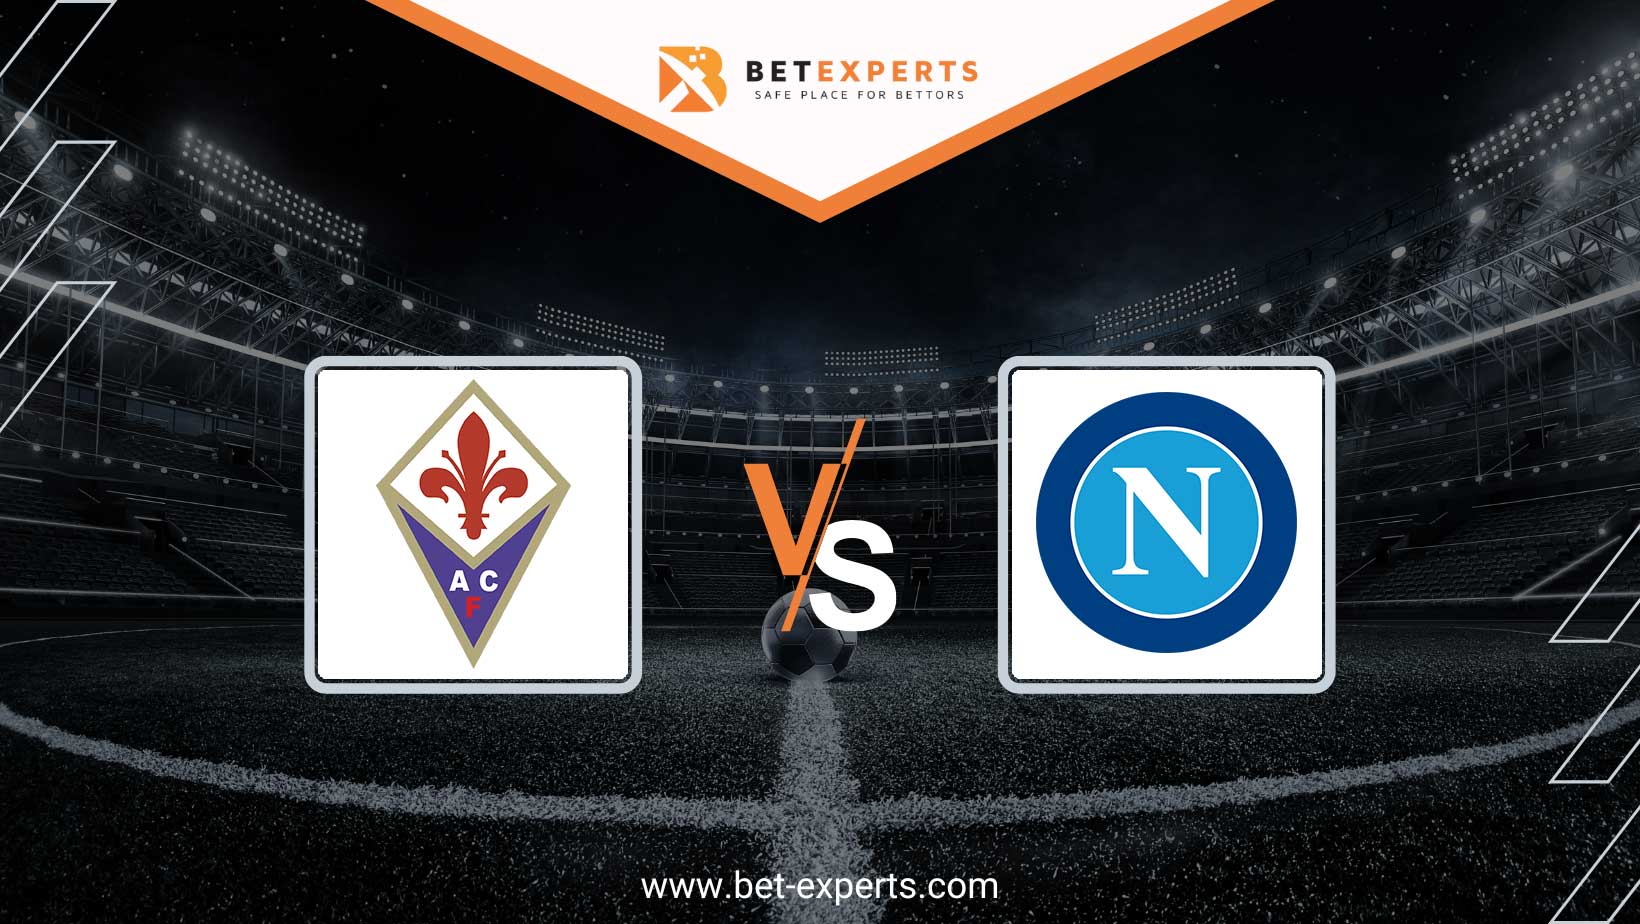 Fiorentina vs Napoli Prediction